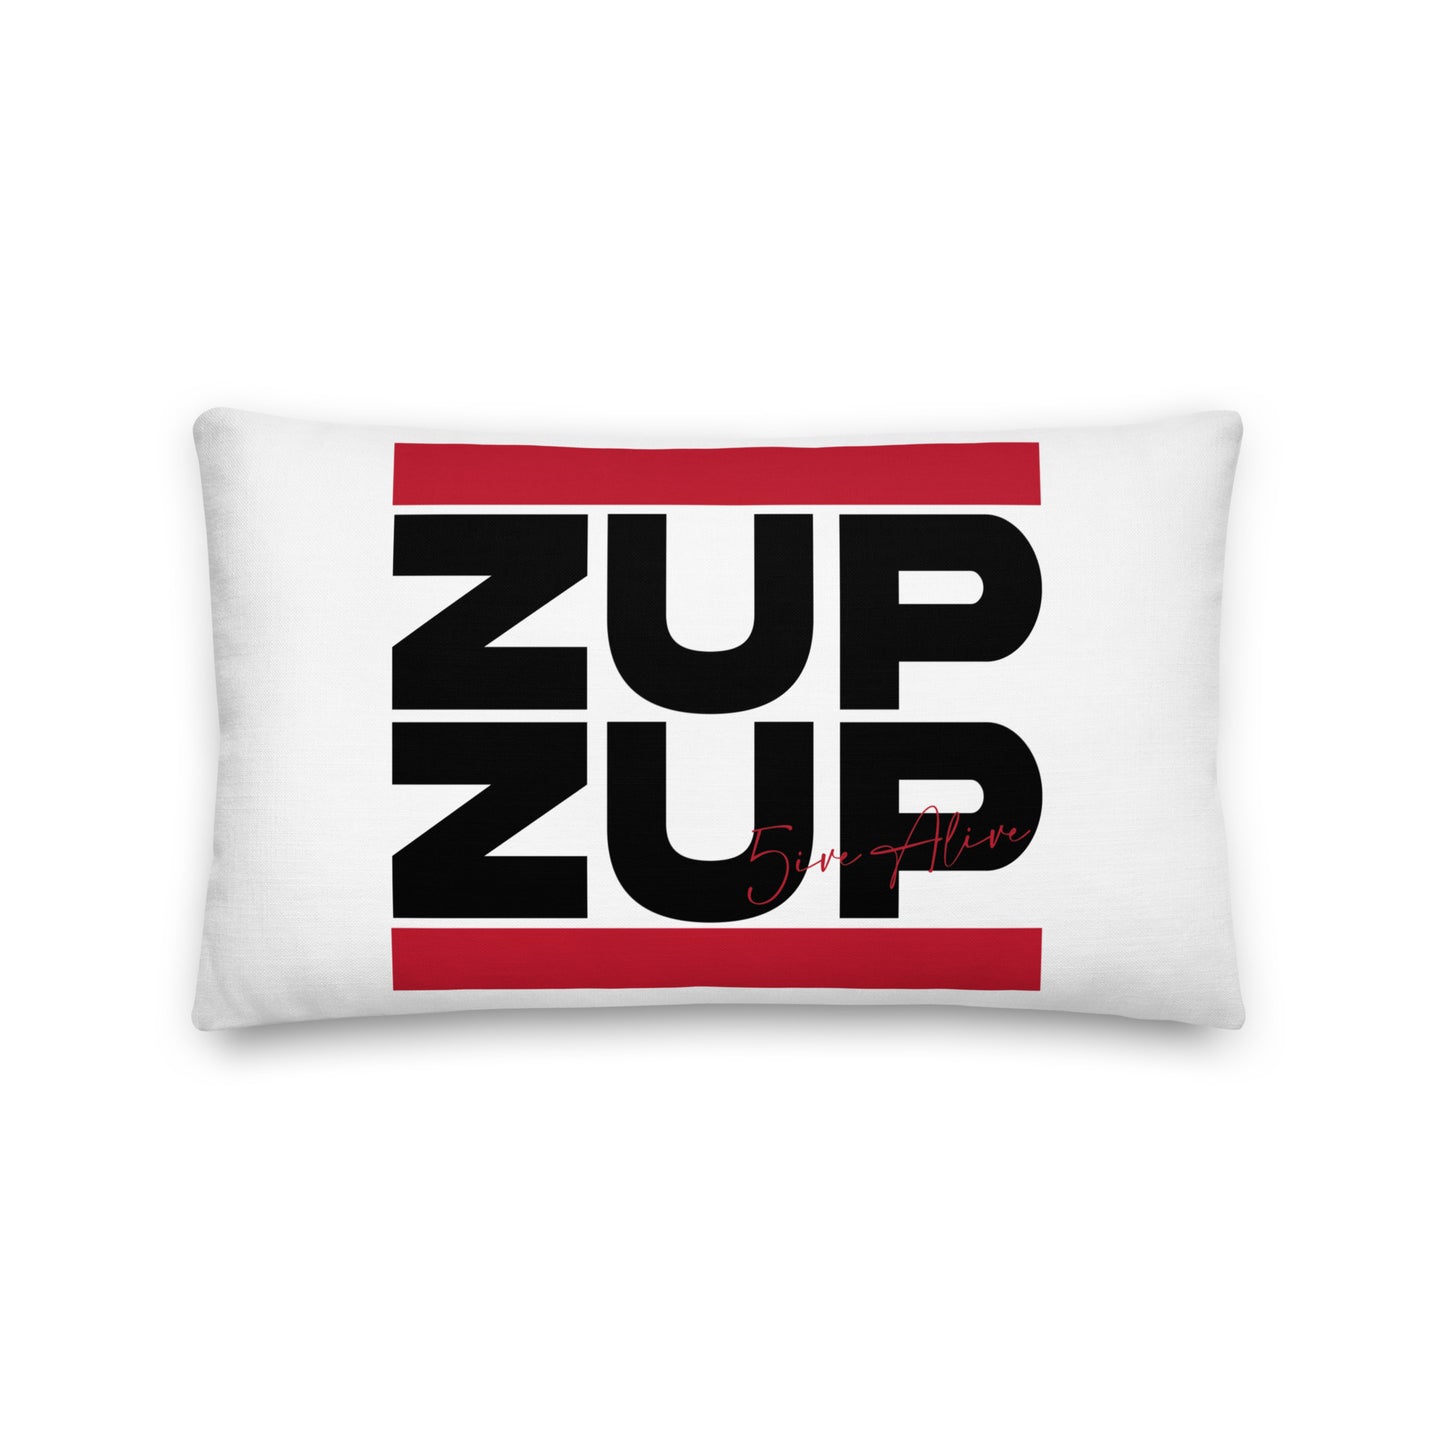 Zup Zup (Black Text) Premium Pillow